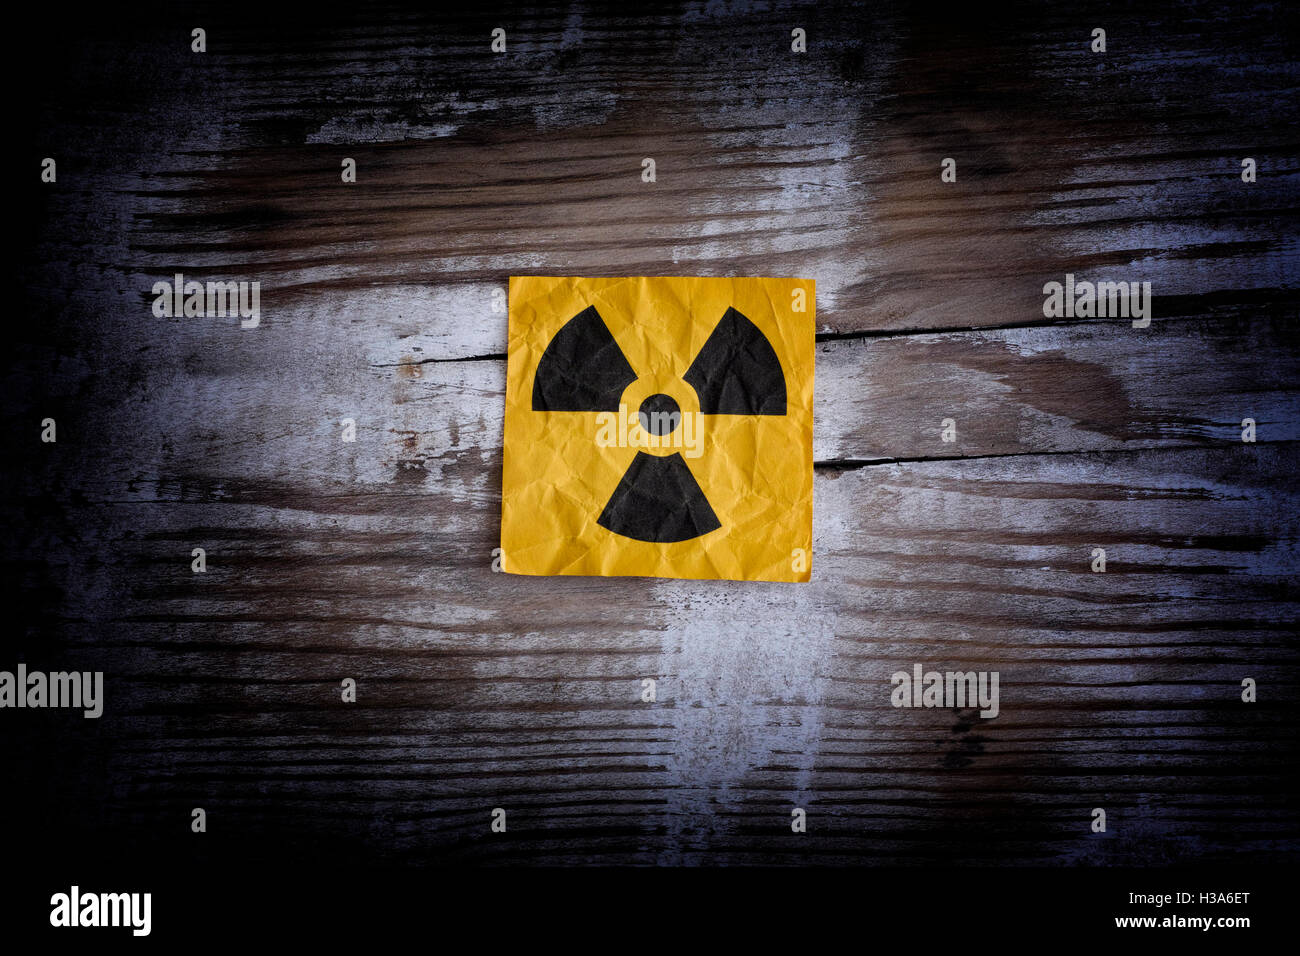 Strahlung-Warnschild auf eine Holzoberfläche. Hautnah. Stockfoto